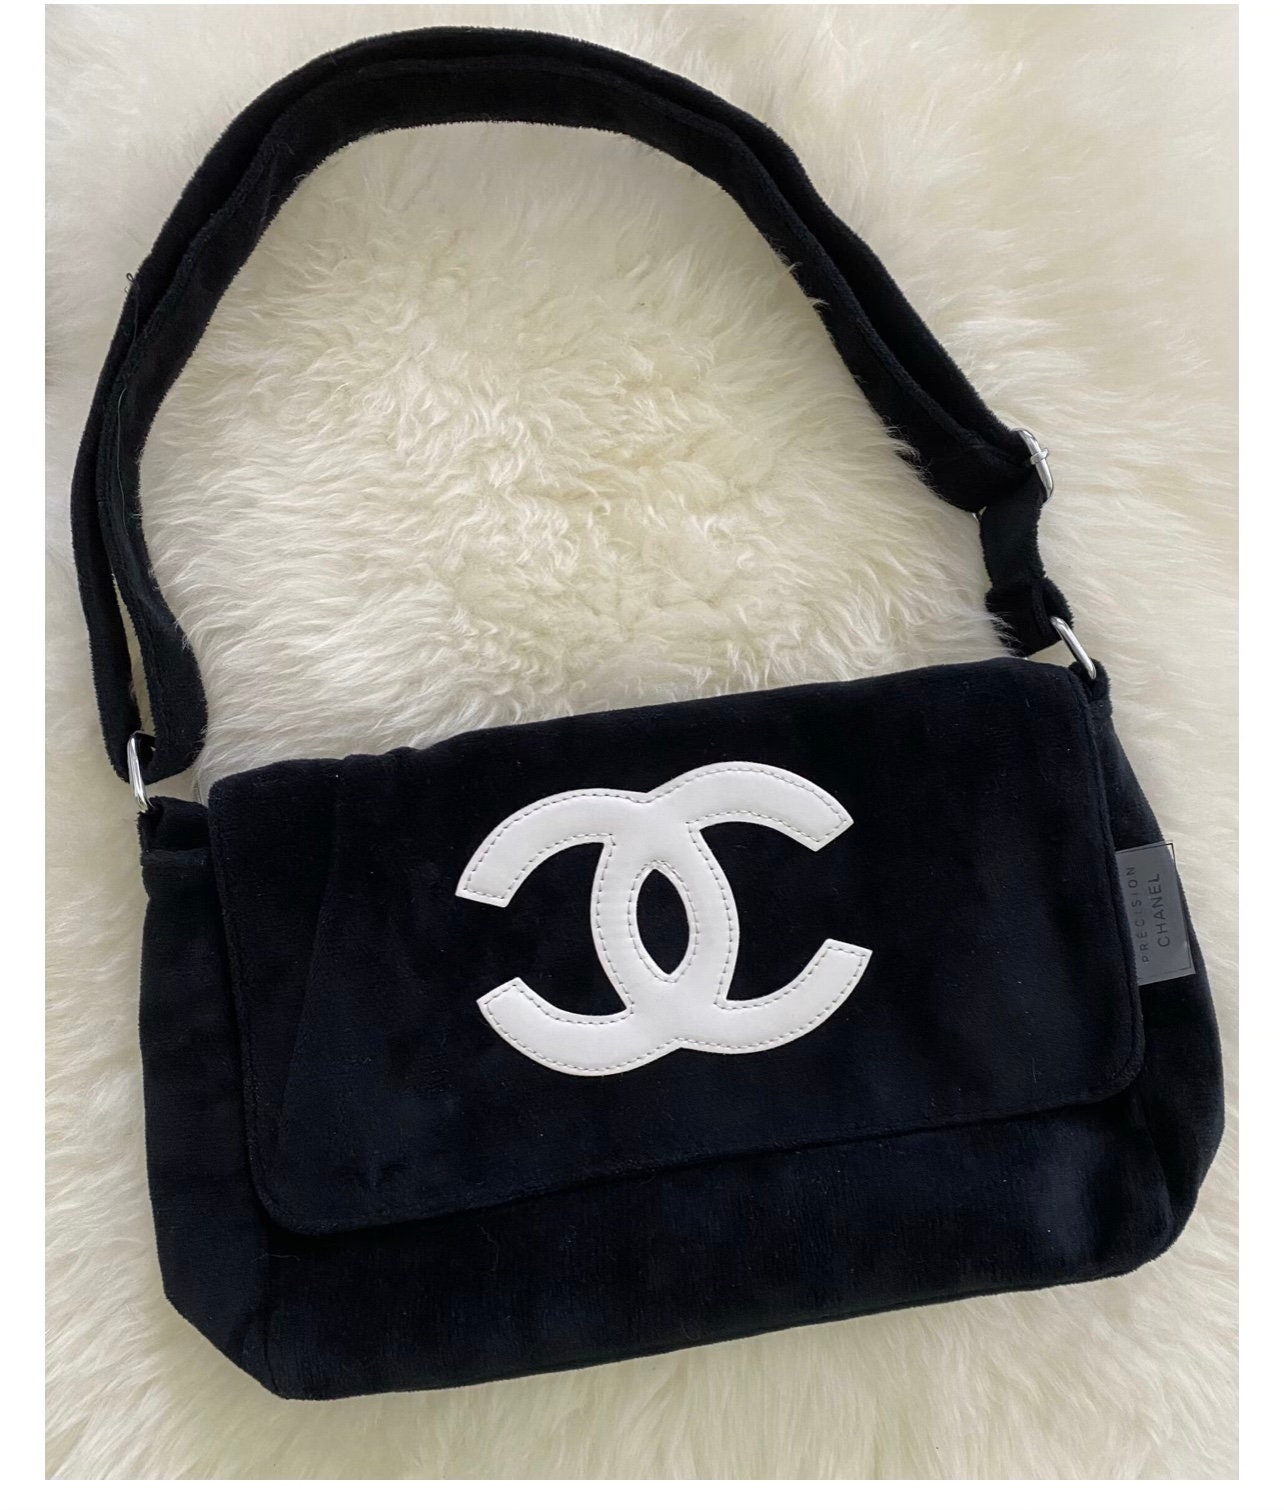 Chanel Precision  Bags  Chanel Precision Bag Black  Poshmark